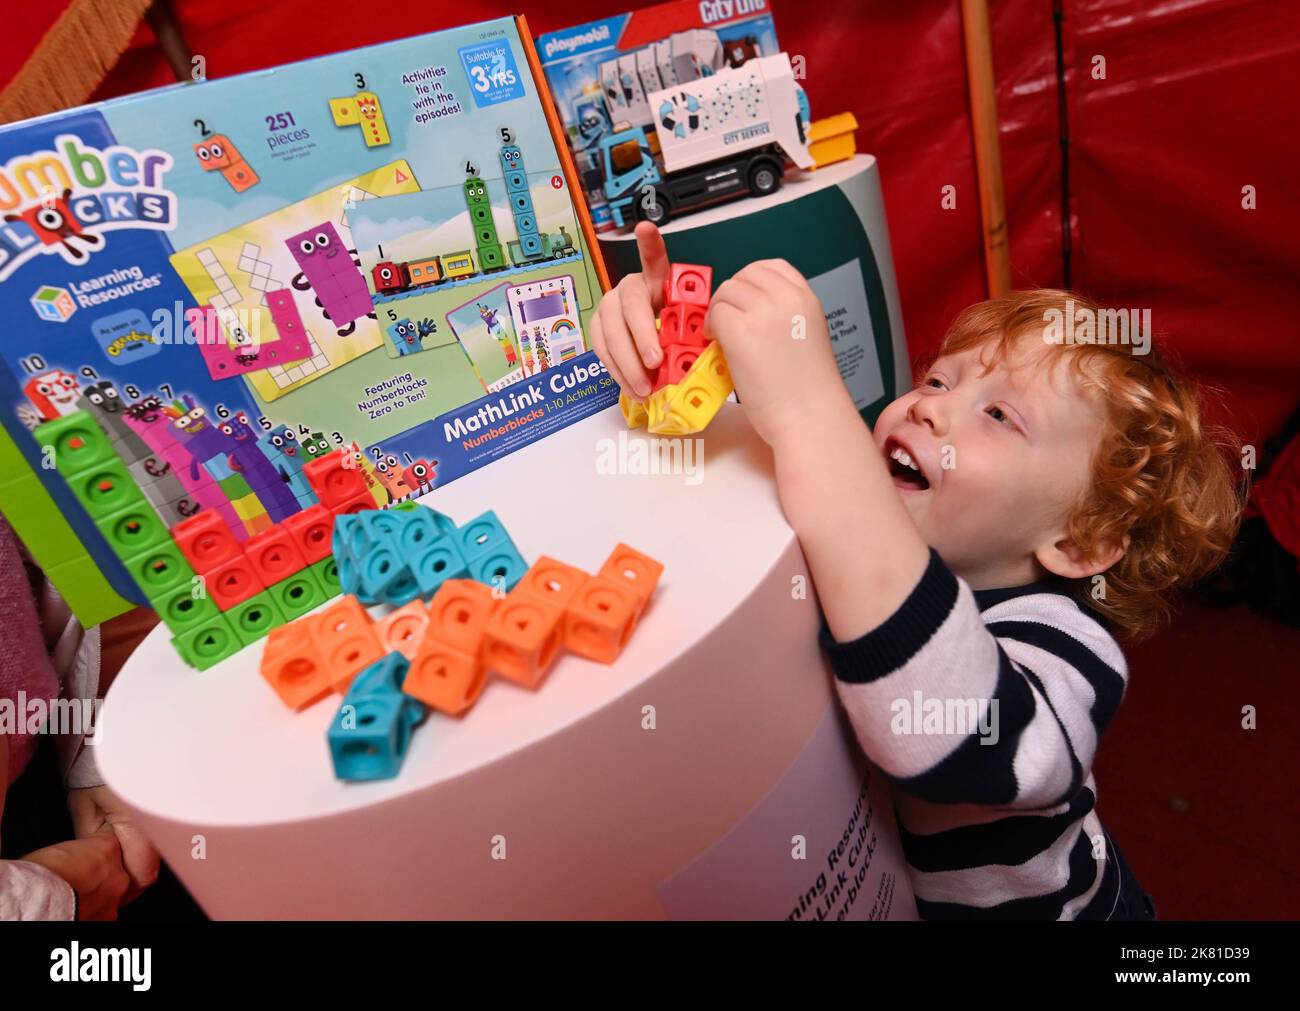 USO EDITORIAL Bertie, DE SÓLO tres años de edad, de Surrey, juega con los  MathLink Cubes Numberblocks en la tienda Joy of Toys de Amazon en Londres,  uno de los diez mejores